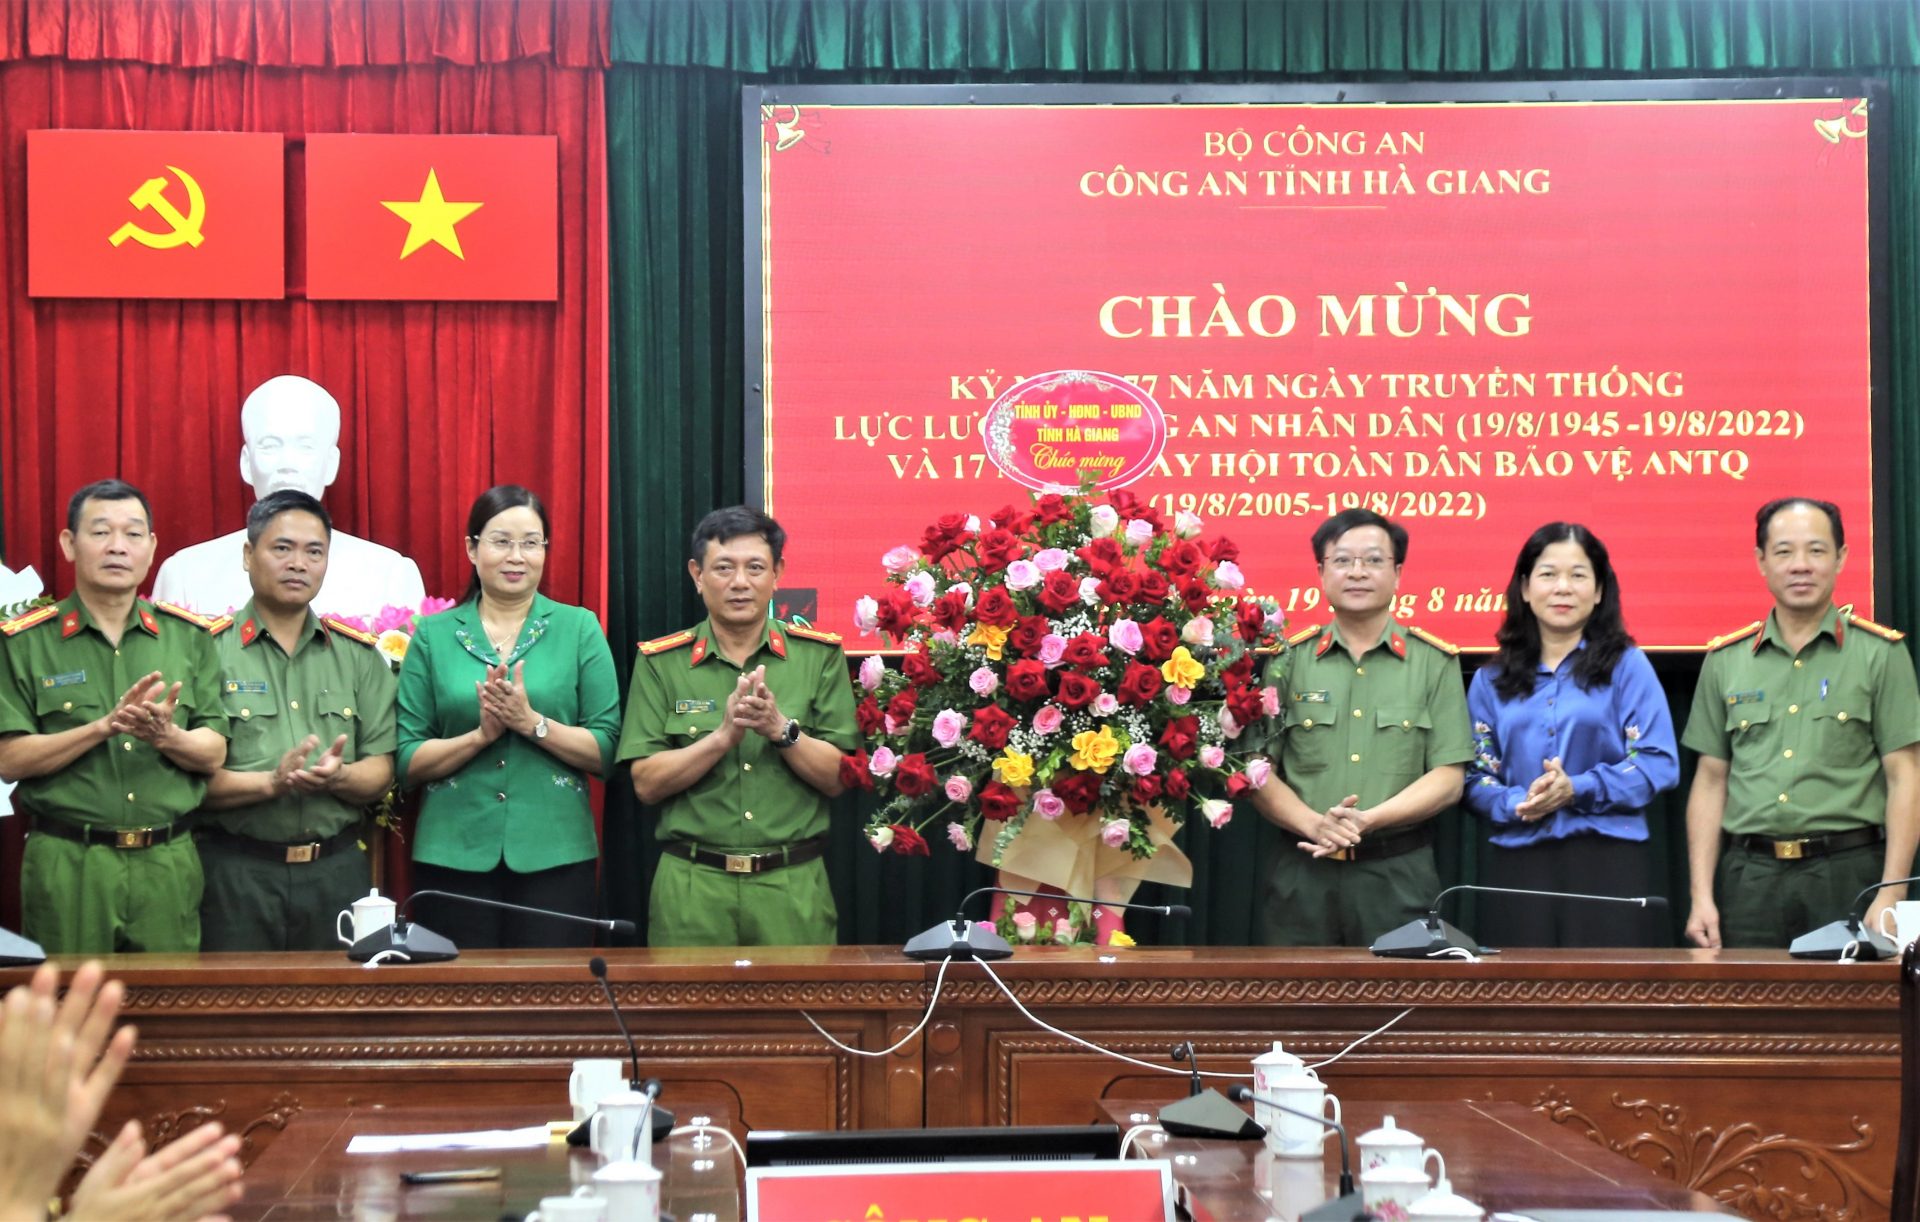 Các đồng chí lãnh đạo tỉnh tặng hoa chúc mừng cán bộ, chiến sĩ Công an tỉnh nhân Ngày truyền thống lực lượng Công an Nhân dân.